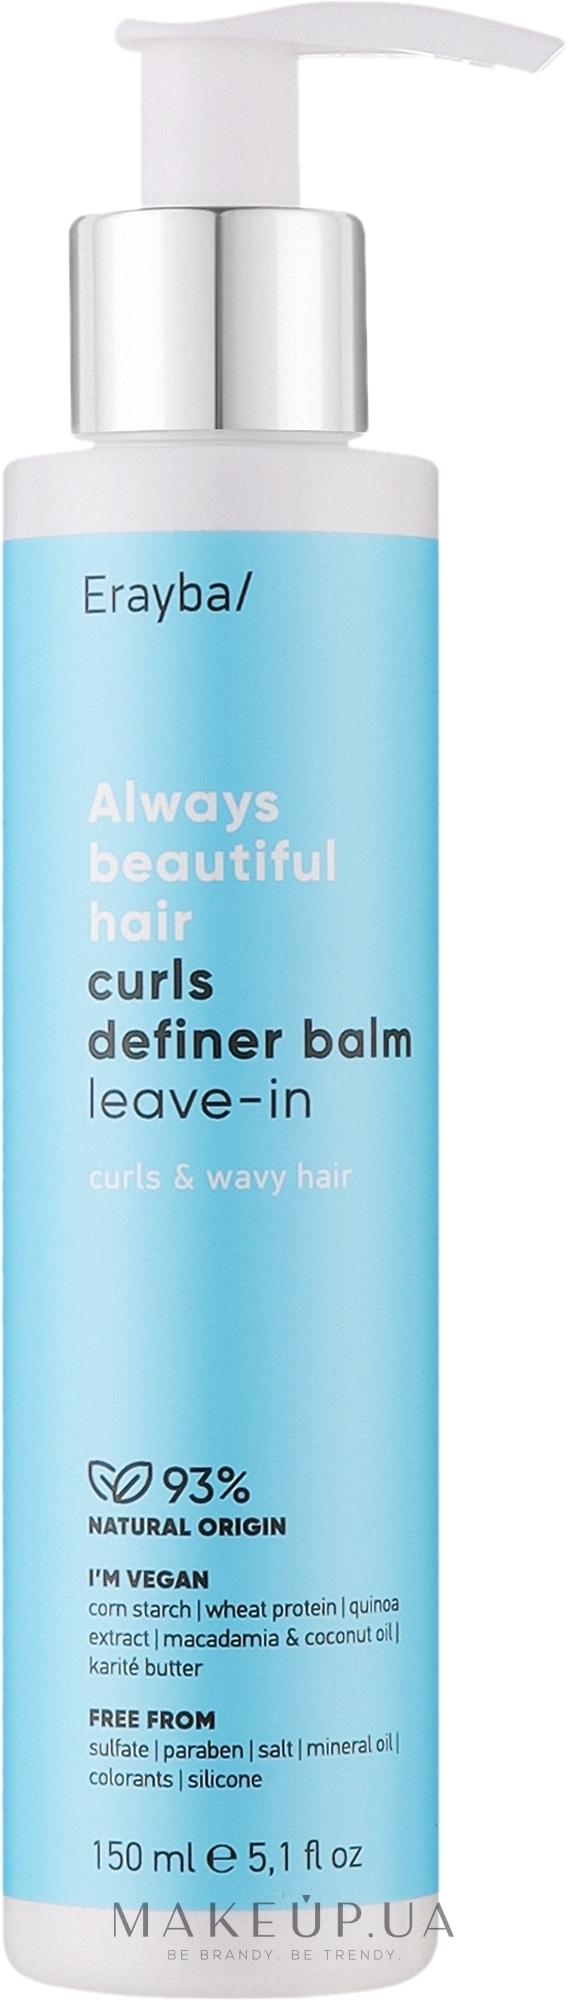 Несмываемый бальзам для вьющихся волос - Erayba ABH Curls Definer Balm Leave-in — фото 150ml